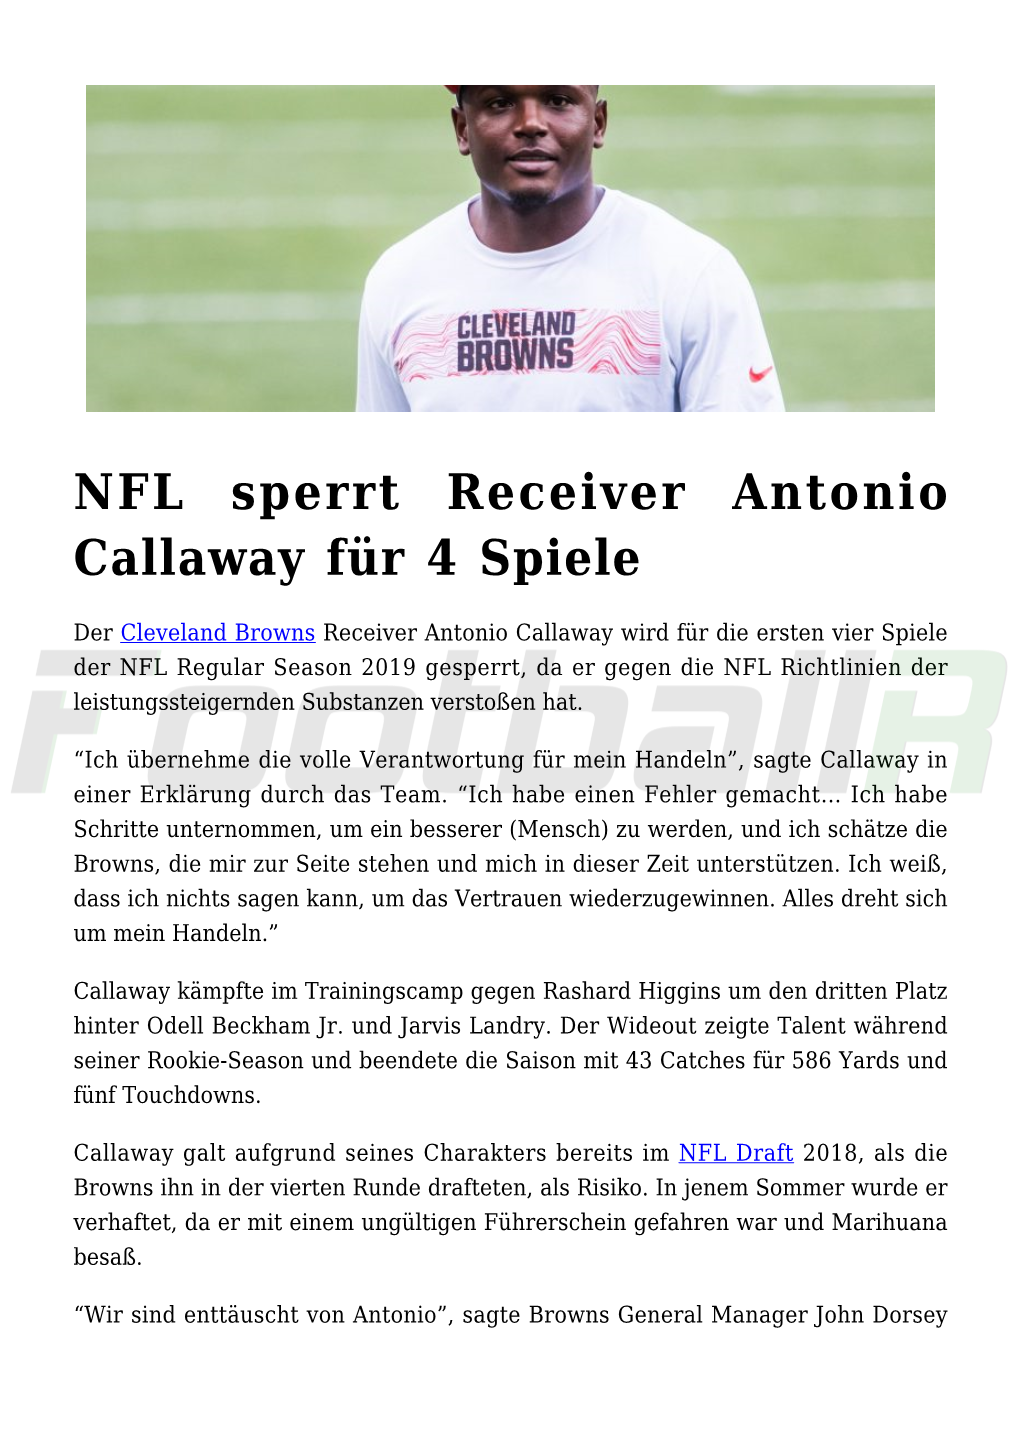 NFL Sperrt Receiver Antonio Callaway Für 4 Spiele